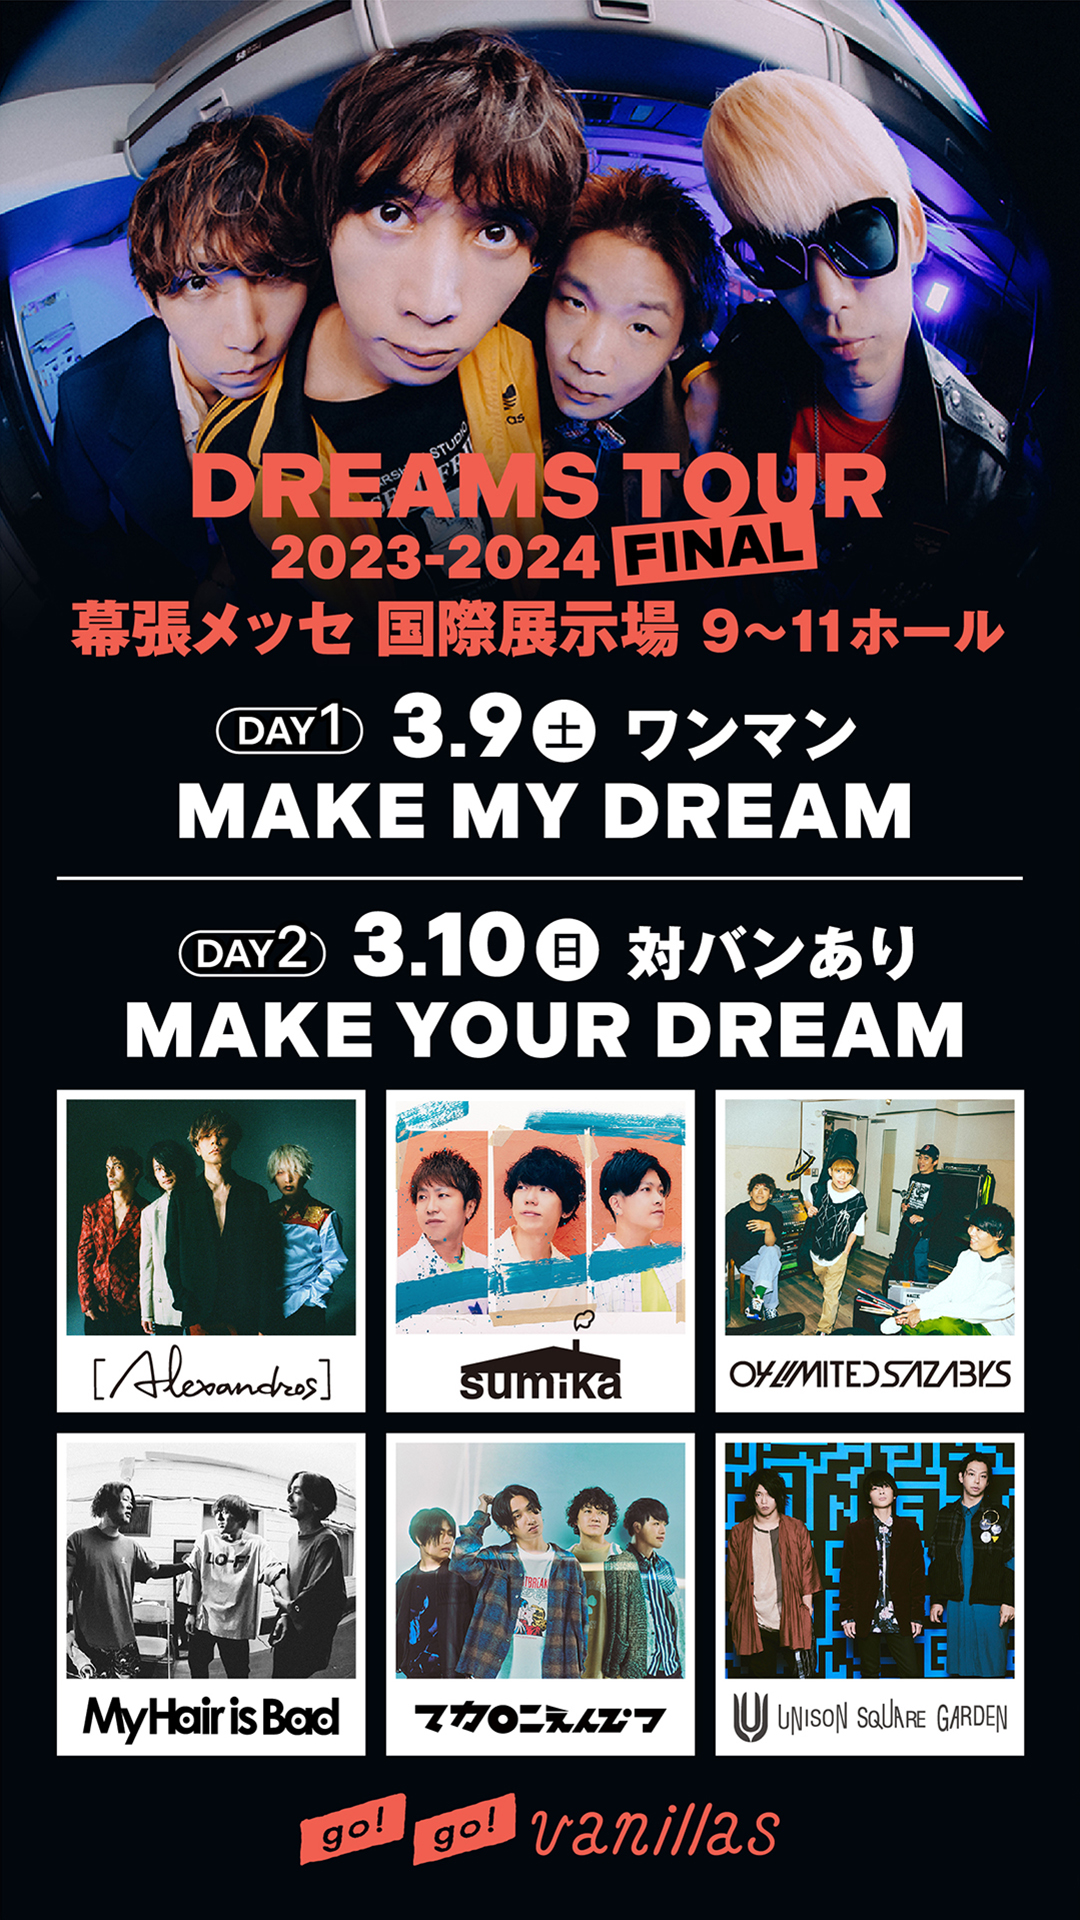 【千葉】DREAMS TOUR 2023-2024 FINAL "MAKE YOUR DREAM" (幕張メッセ)